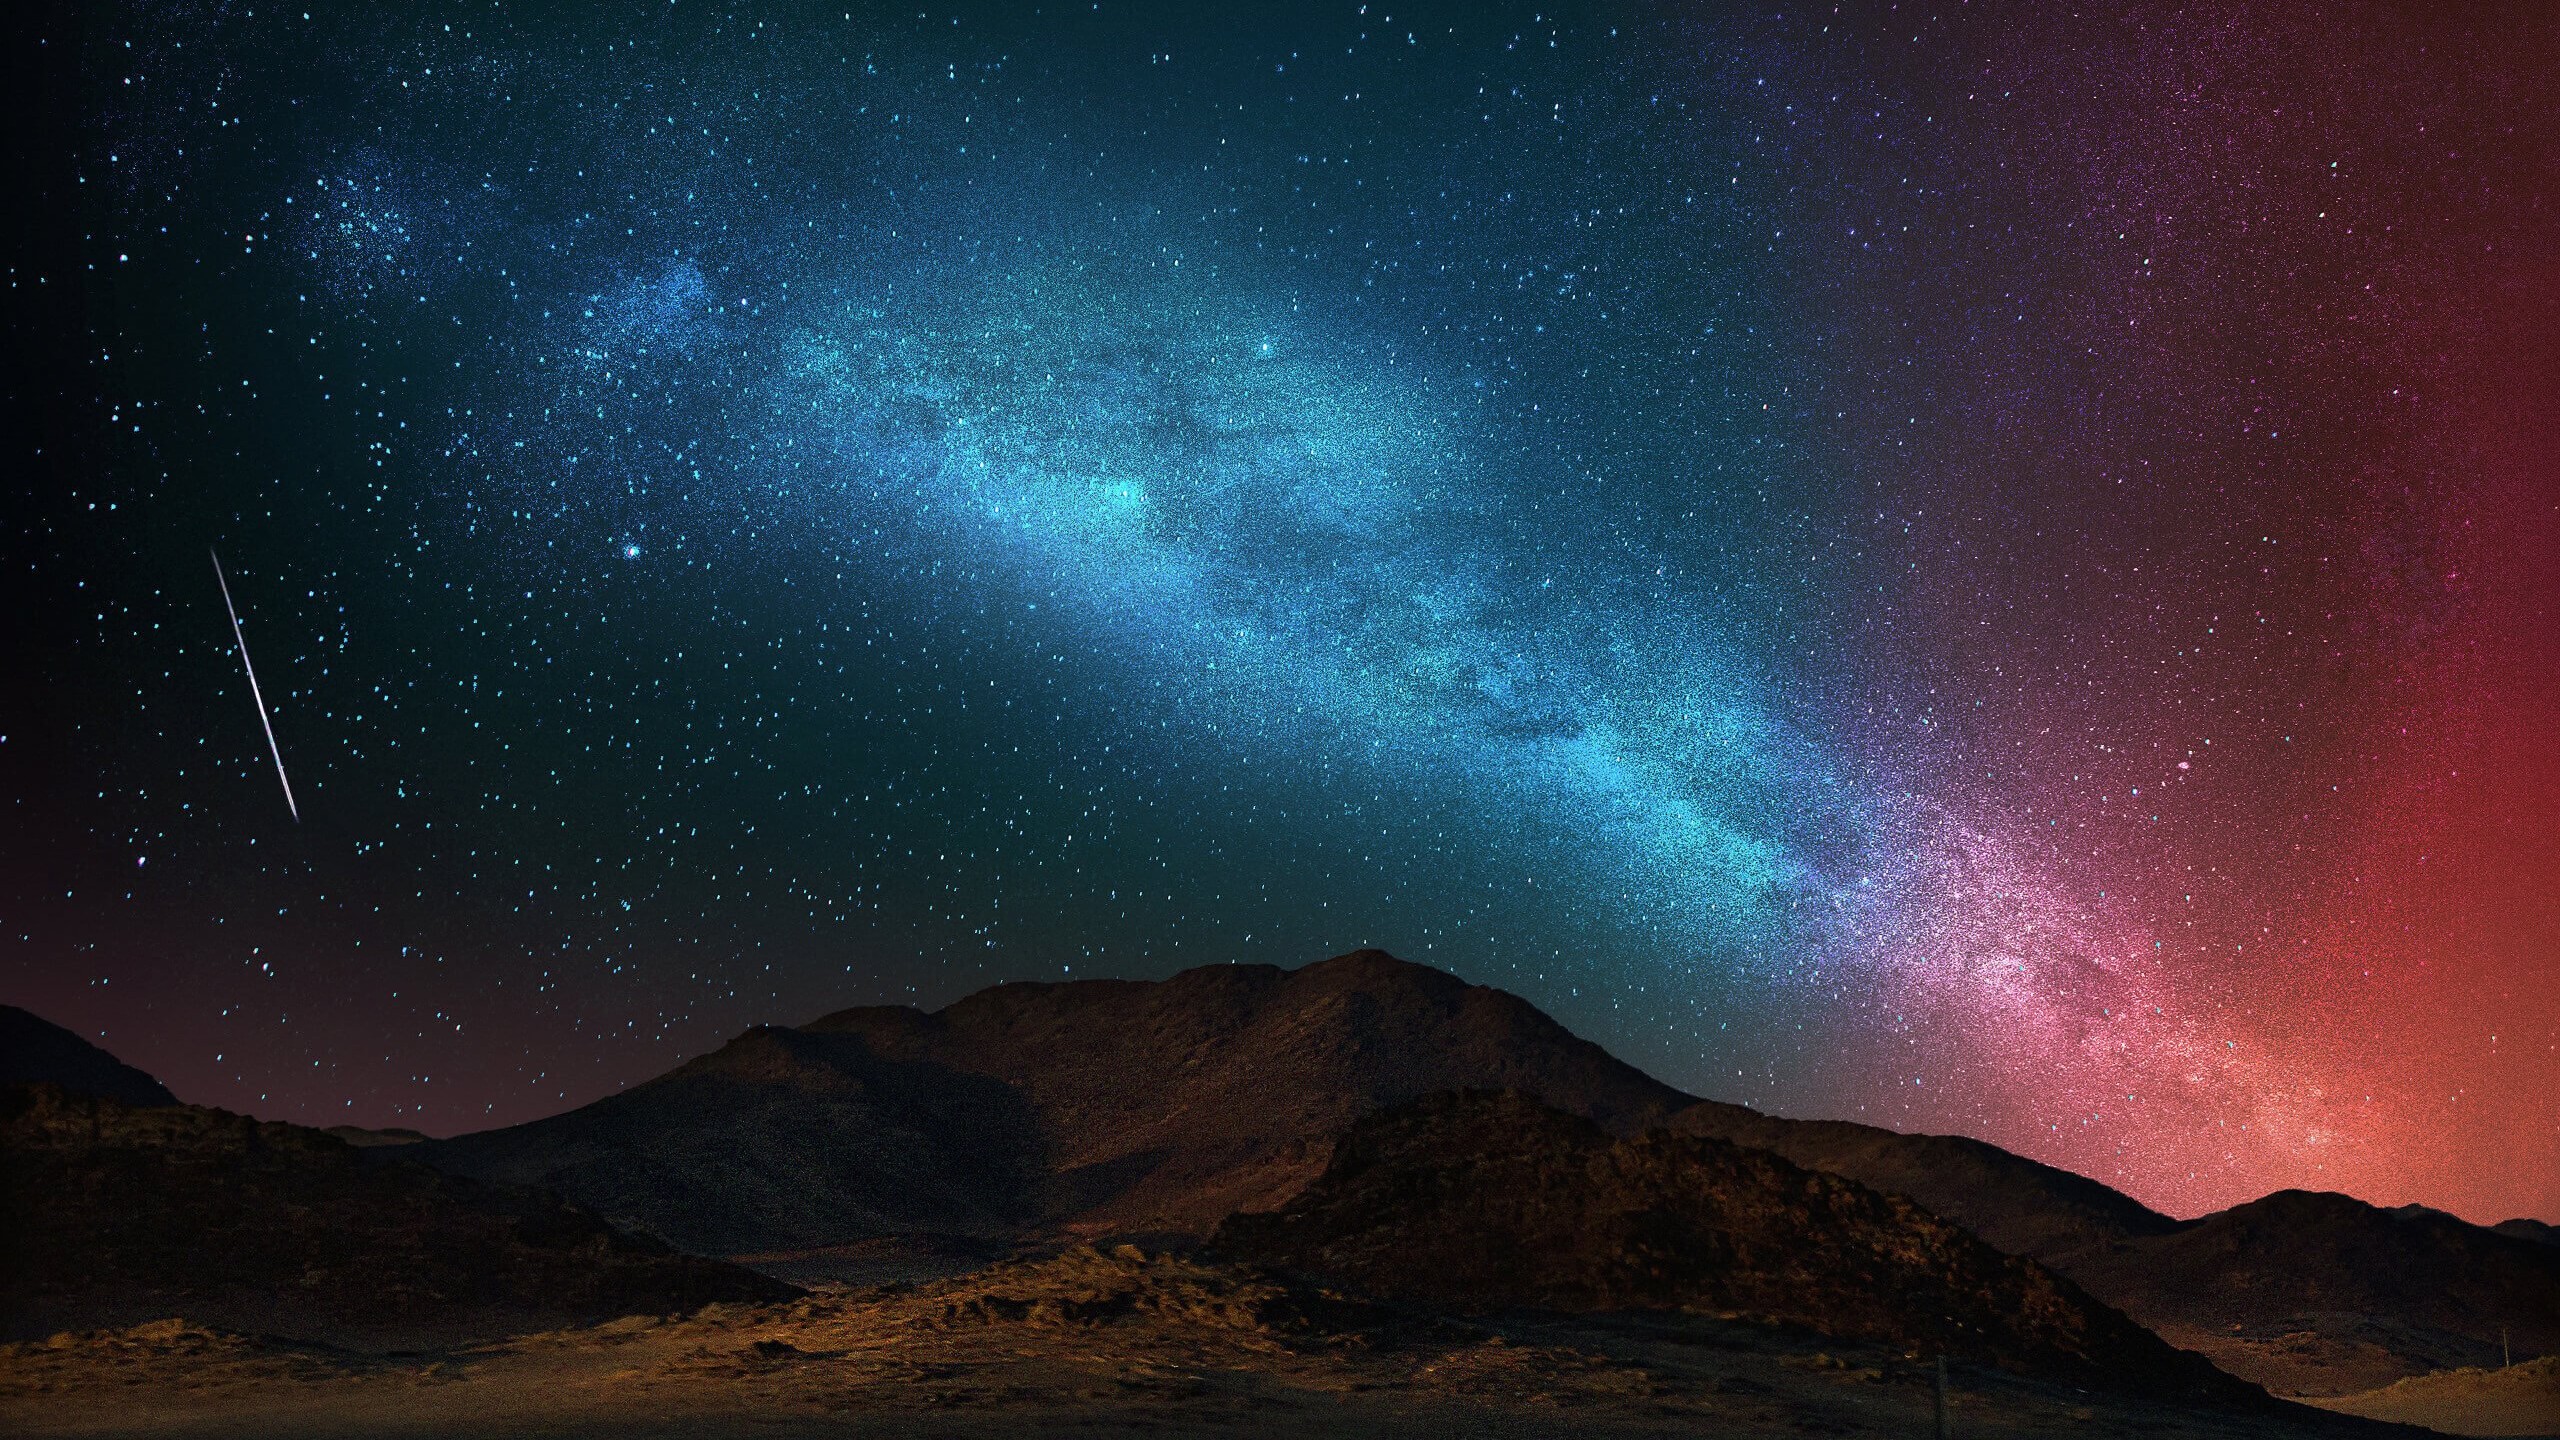 Starry Night Over The Desert Wallpaper for Social Media YouTube Channel Art